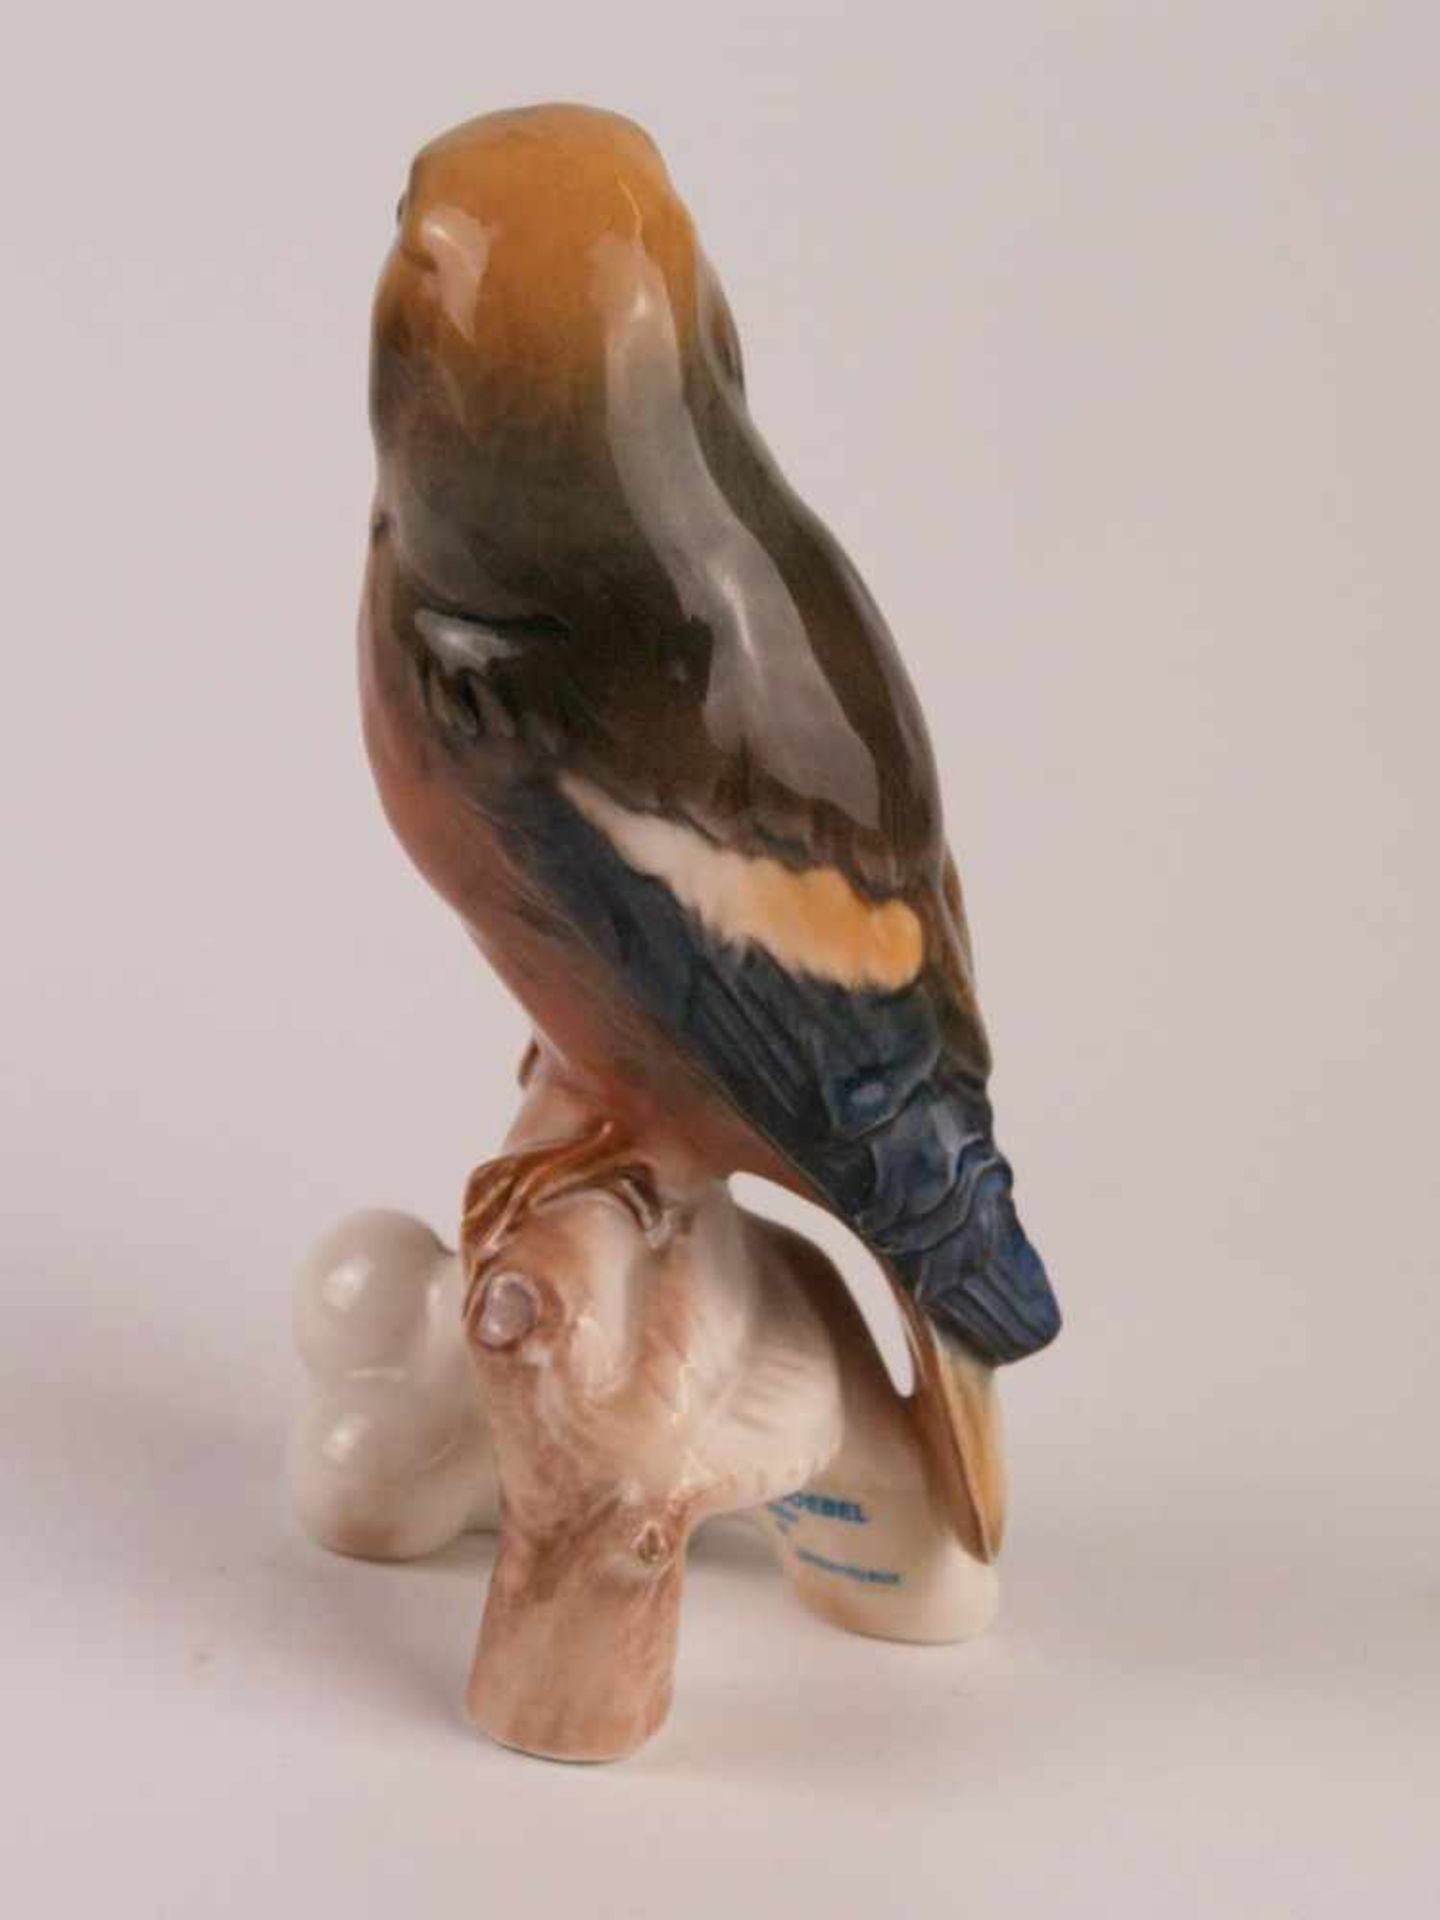 Vogelfigur Goebel - Porzellanfigur, Raubvogel auf Kirschzweig mit Früchten sitzend, naturalistisch - Bild 3 aus 6